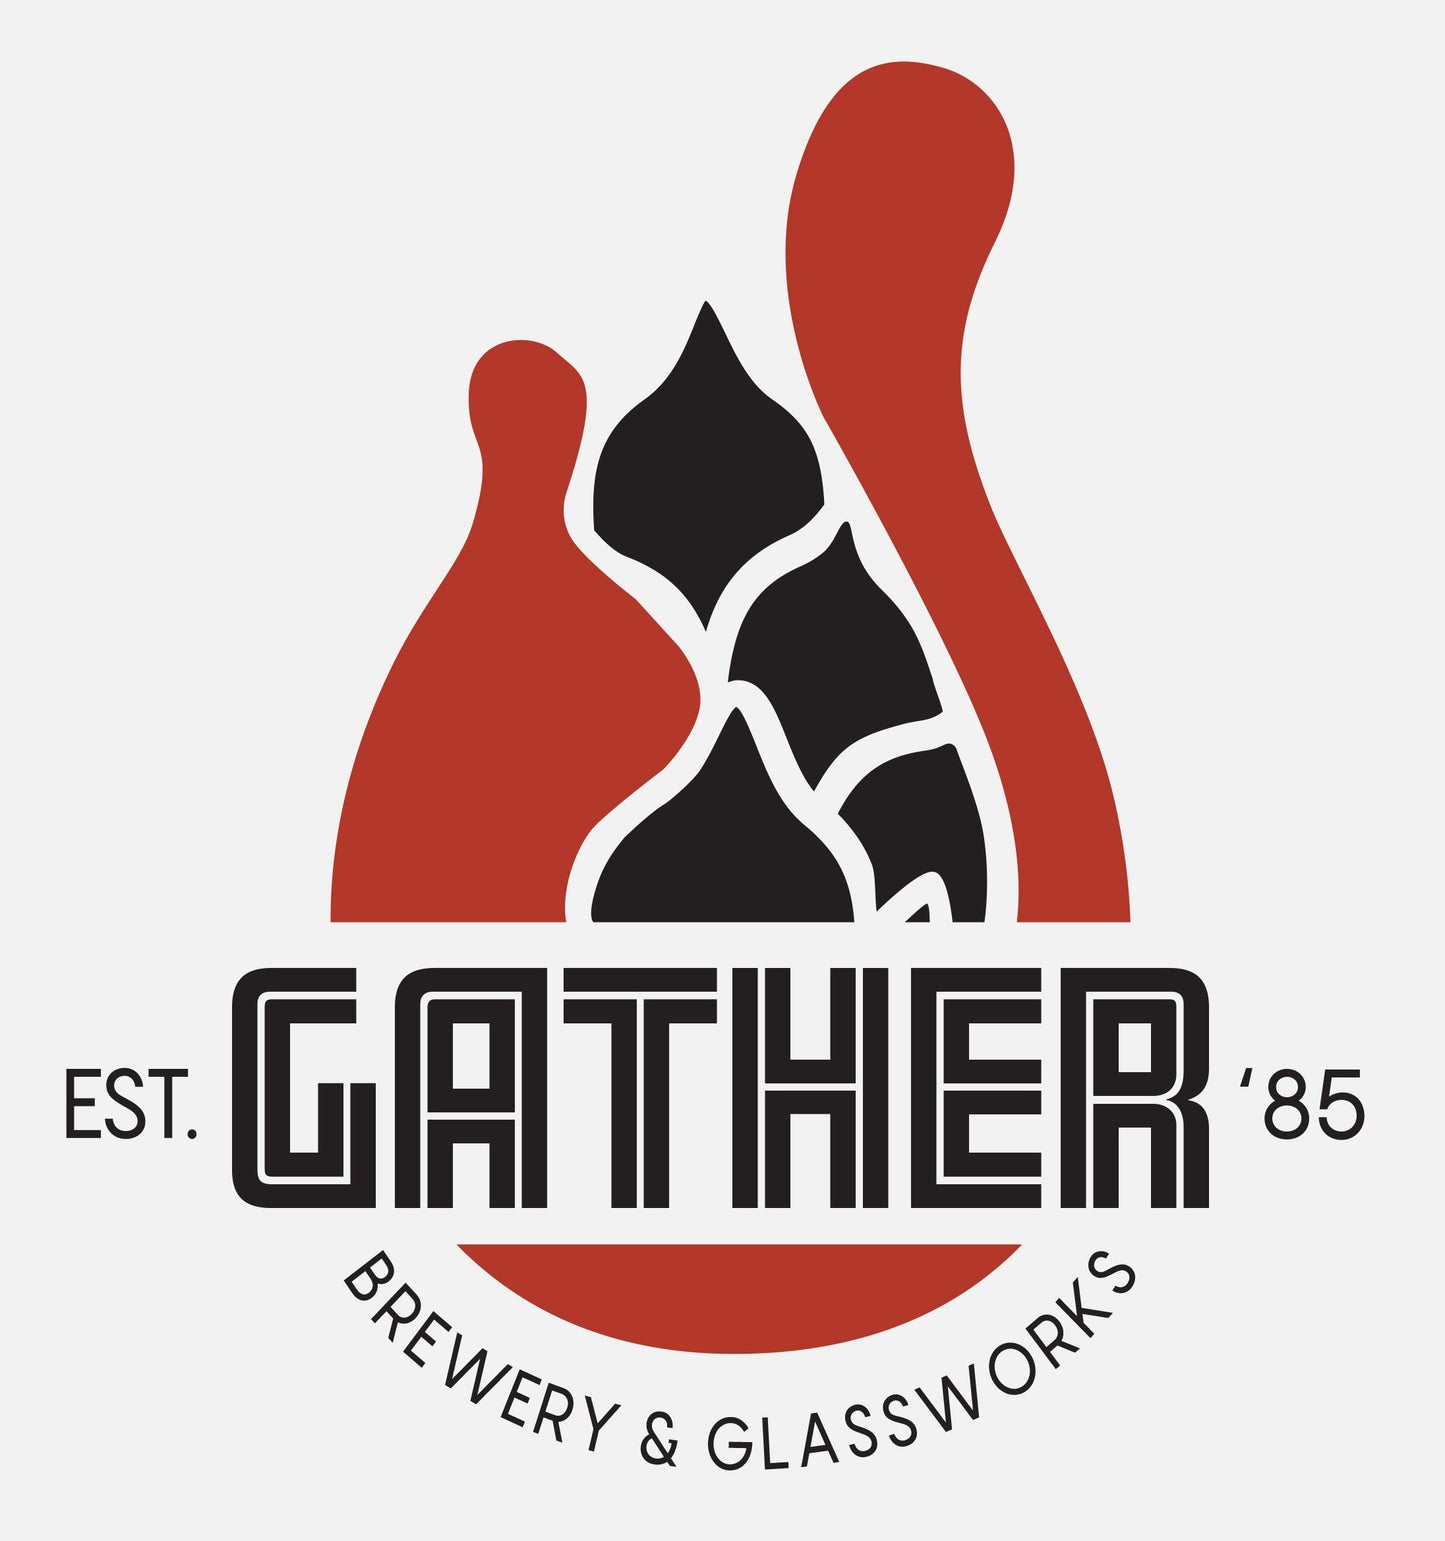 Glassblowing Workshop and Beer Tasting for 4-6